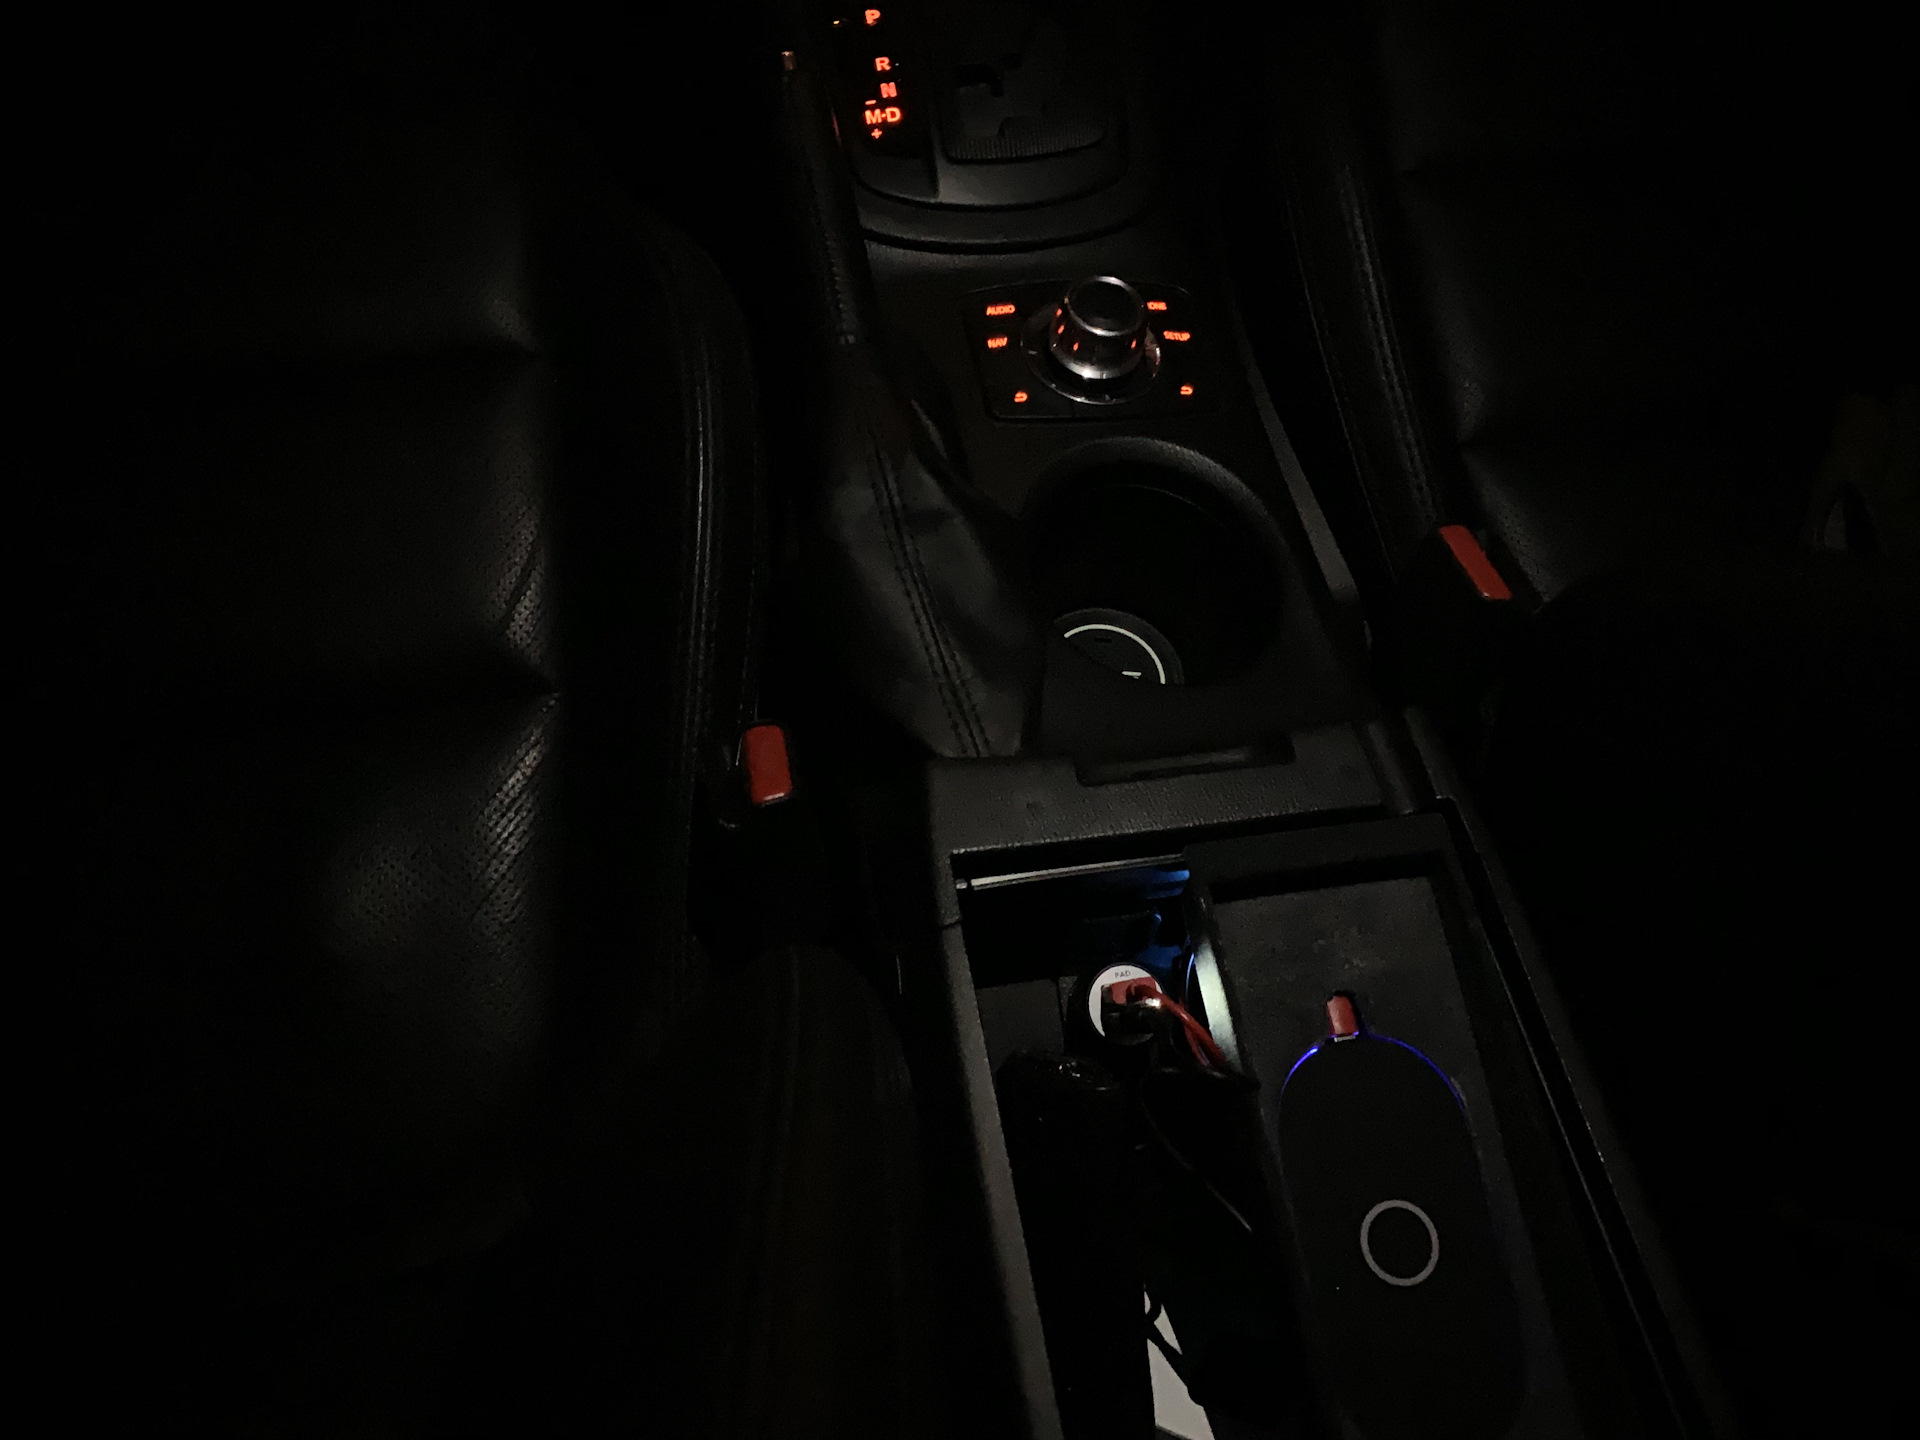 Подсветка мазда сх5. Подсветка салона Mazda CX-5. Подсветка салона Мазда cx5. Подсветка салона CX-5. Подсветка центральной консоли Мазда сх5.